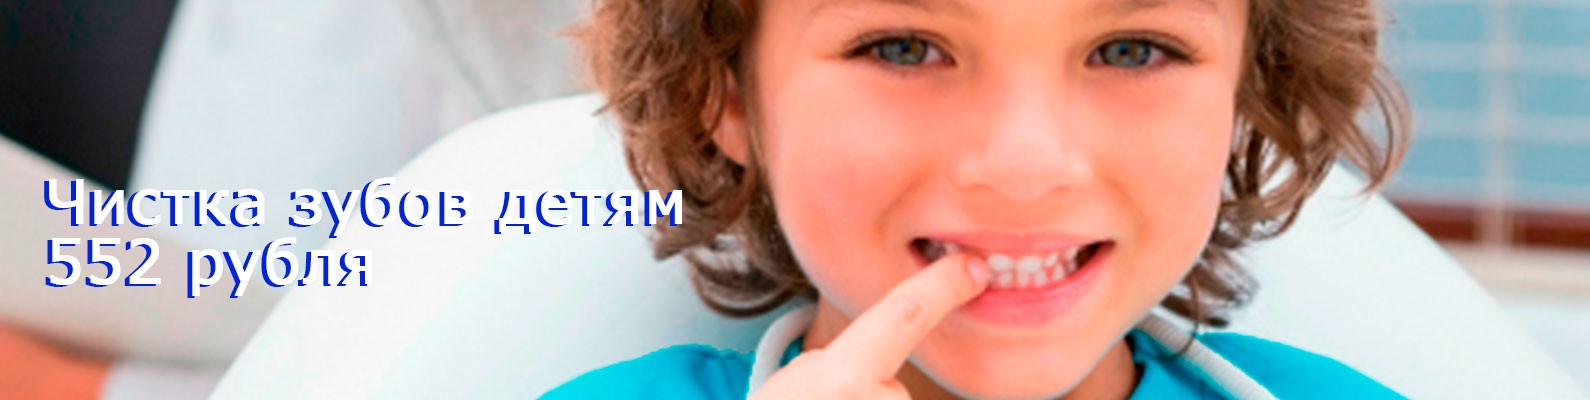 Чистка зубов детям: 552 рубля!